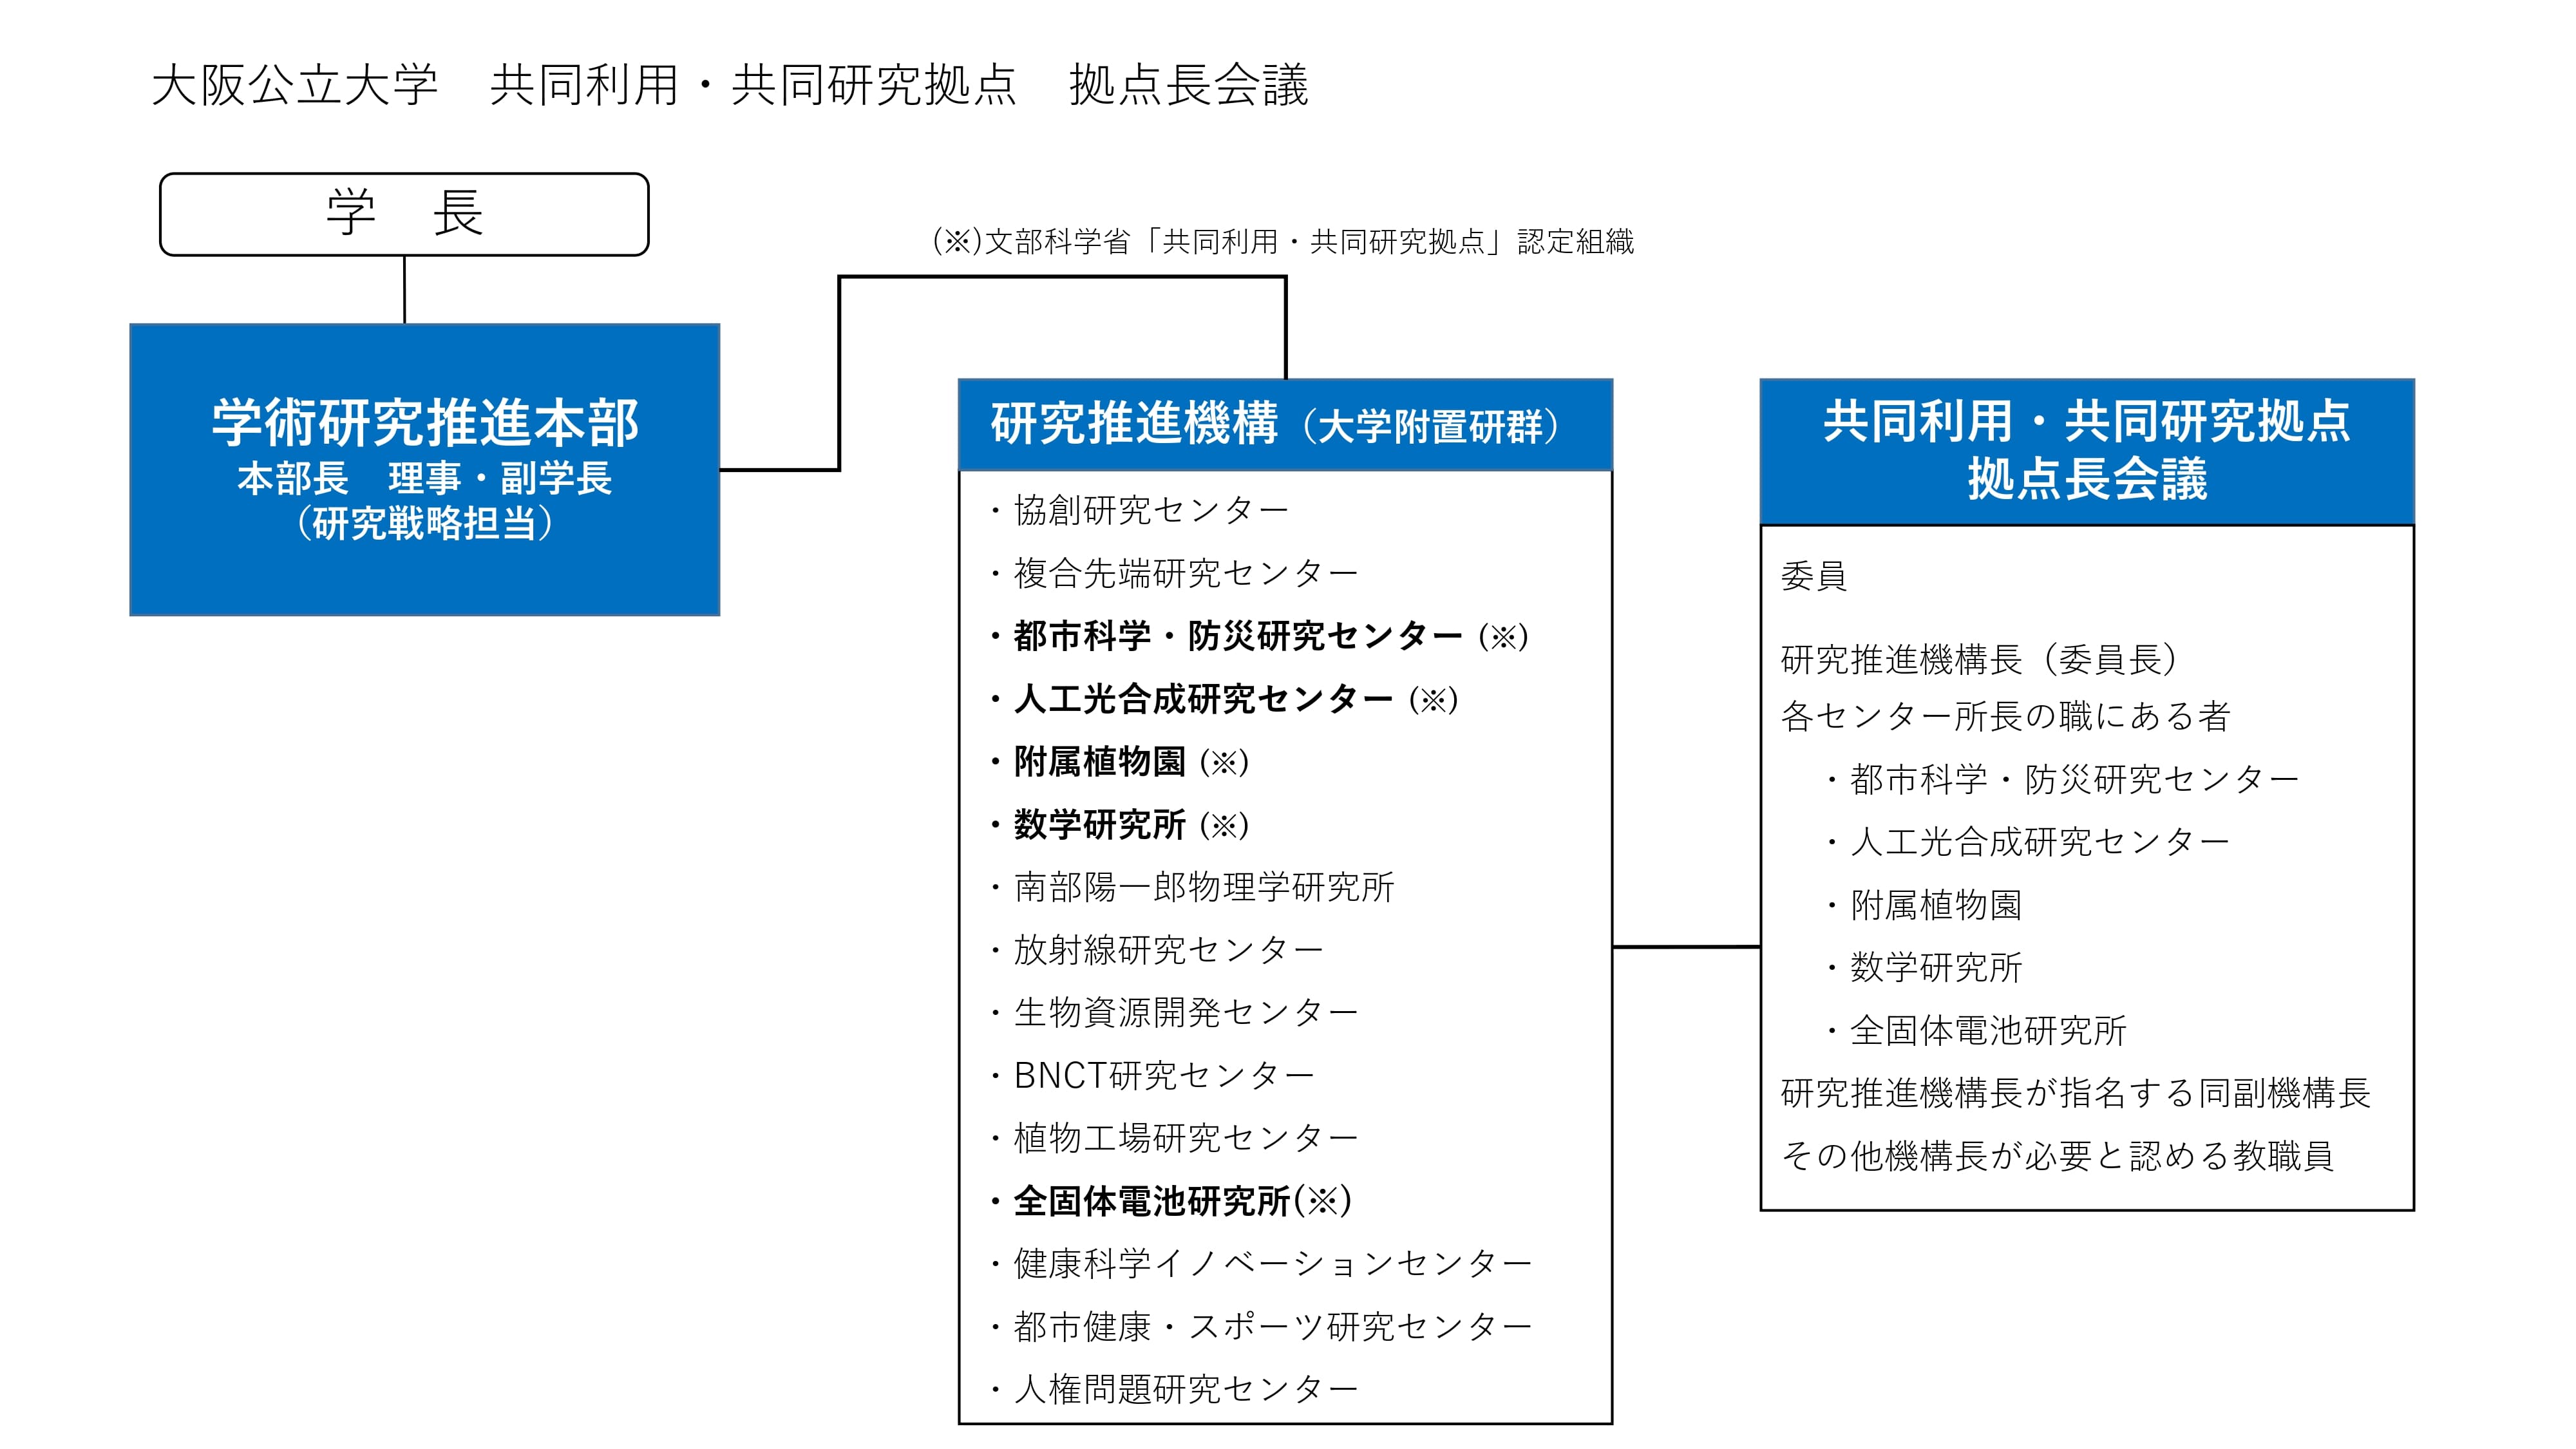 大阪公立大学 共同利用・共同研究拠点 拠点長会議の組織図